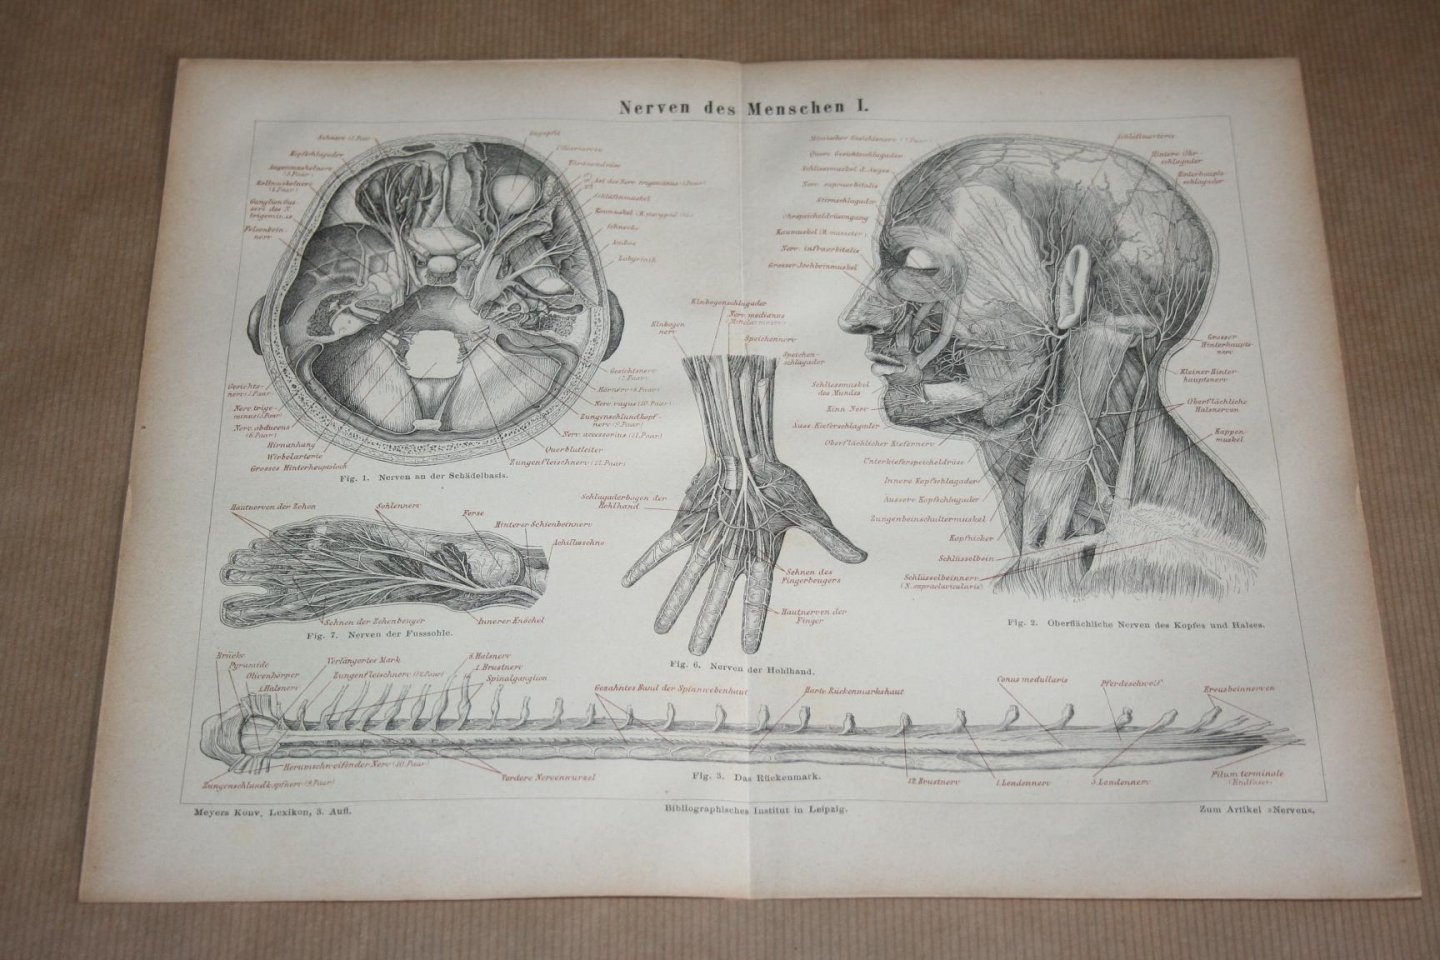  - 2 antieke prenten - Anatomie Zenuwen van de mens  - Circa 1875